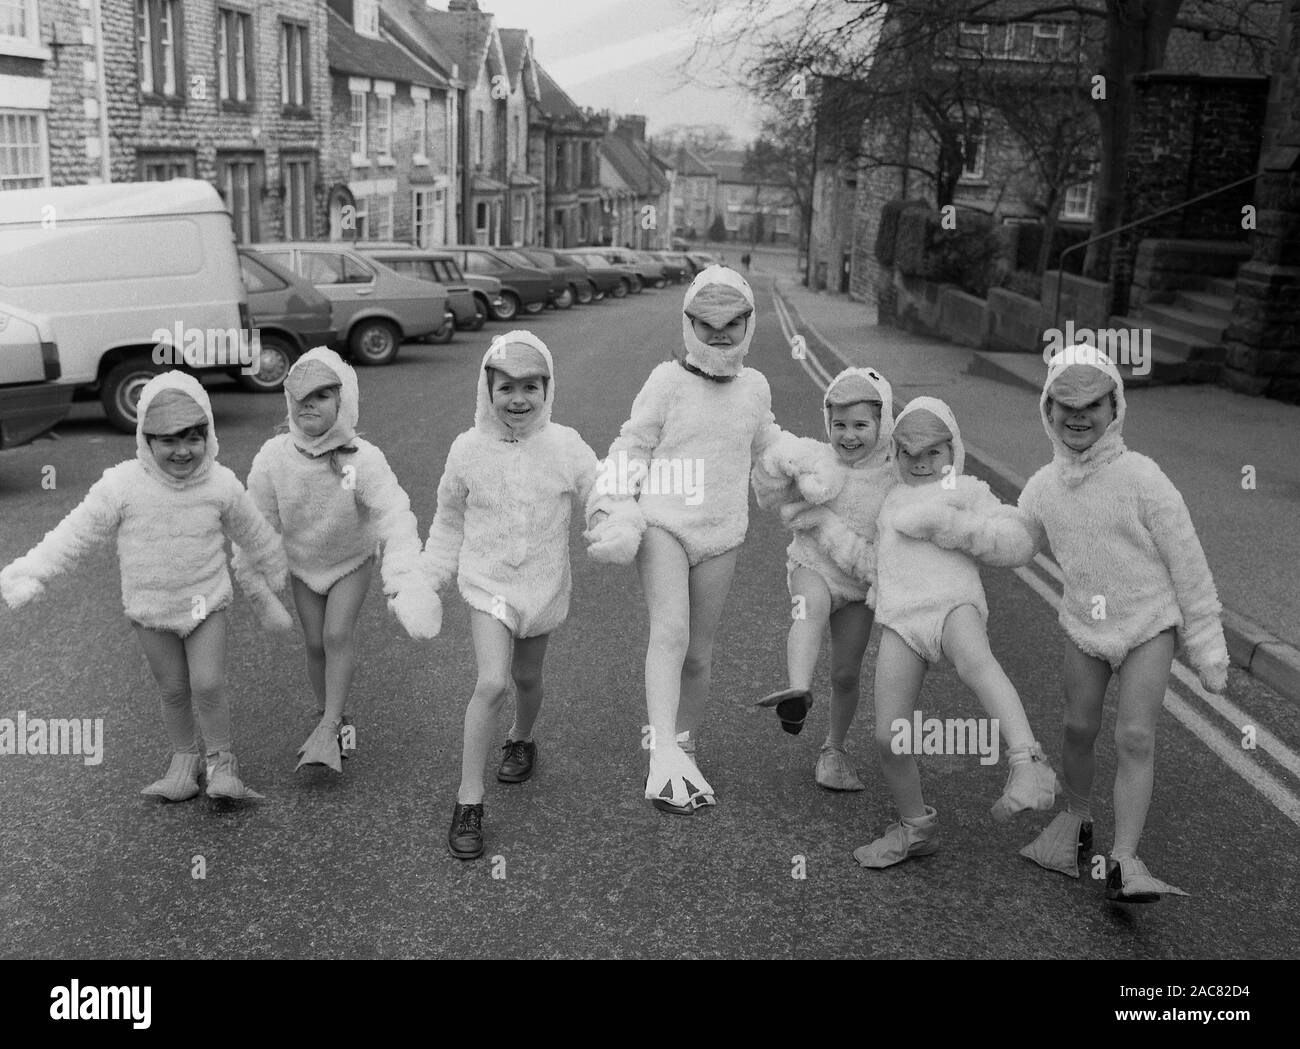 Années 1980, historiques, 'Duck derby", les jeunes enfants dans une rue urbaine tenant la main et portant des costumes de canard, composé d'un costume de canard, canard en forme de tête du capot et surchaussures, England, UK. Banque D'Images